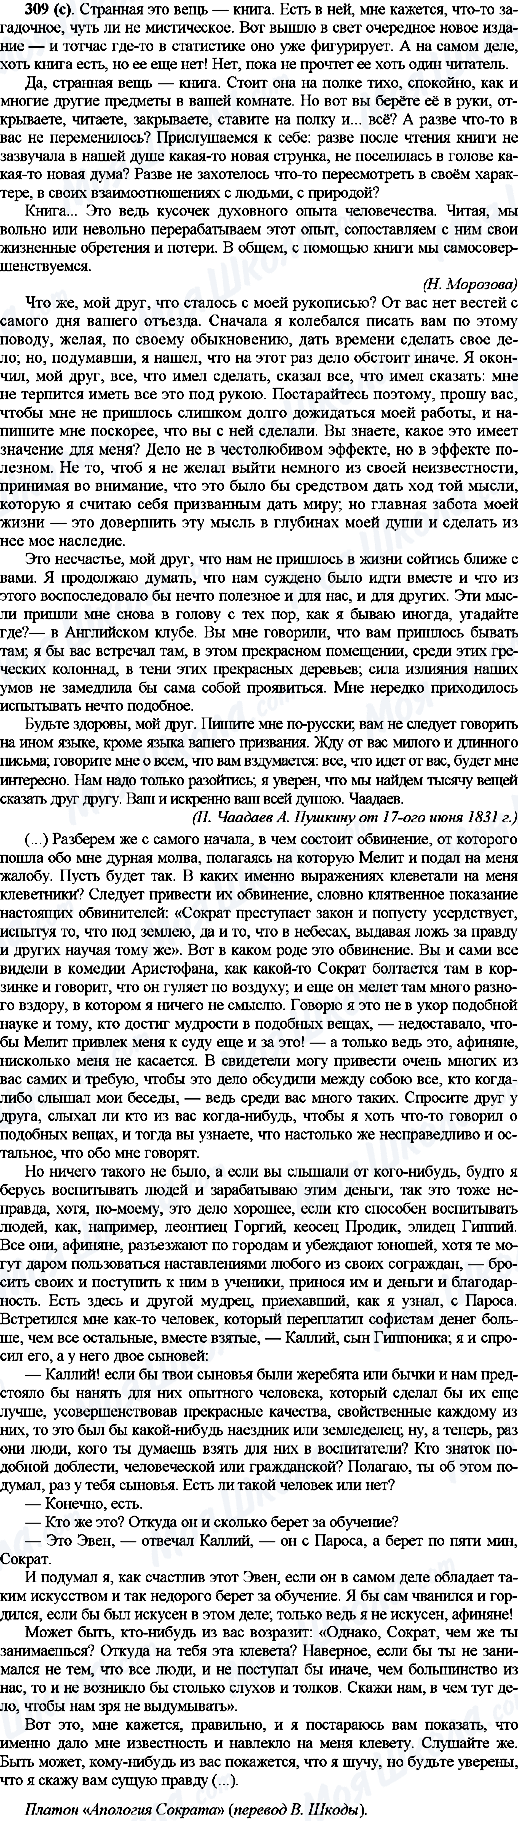 ГДЗ Русский язык 10 класс страница 309(с)